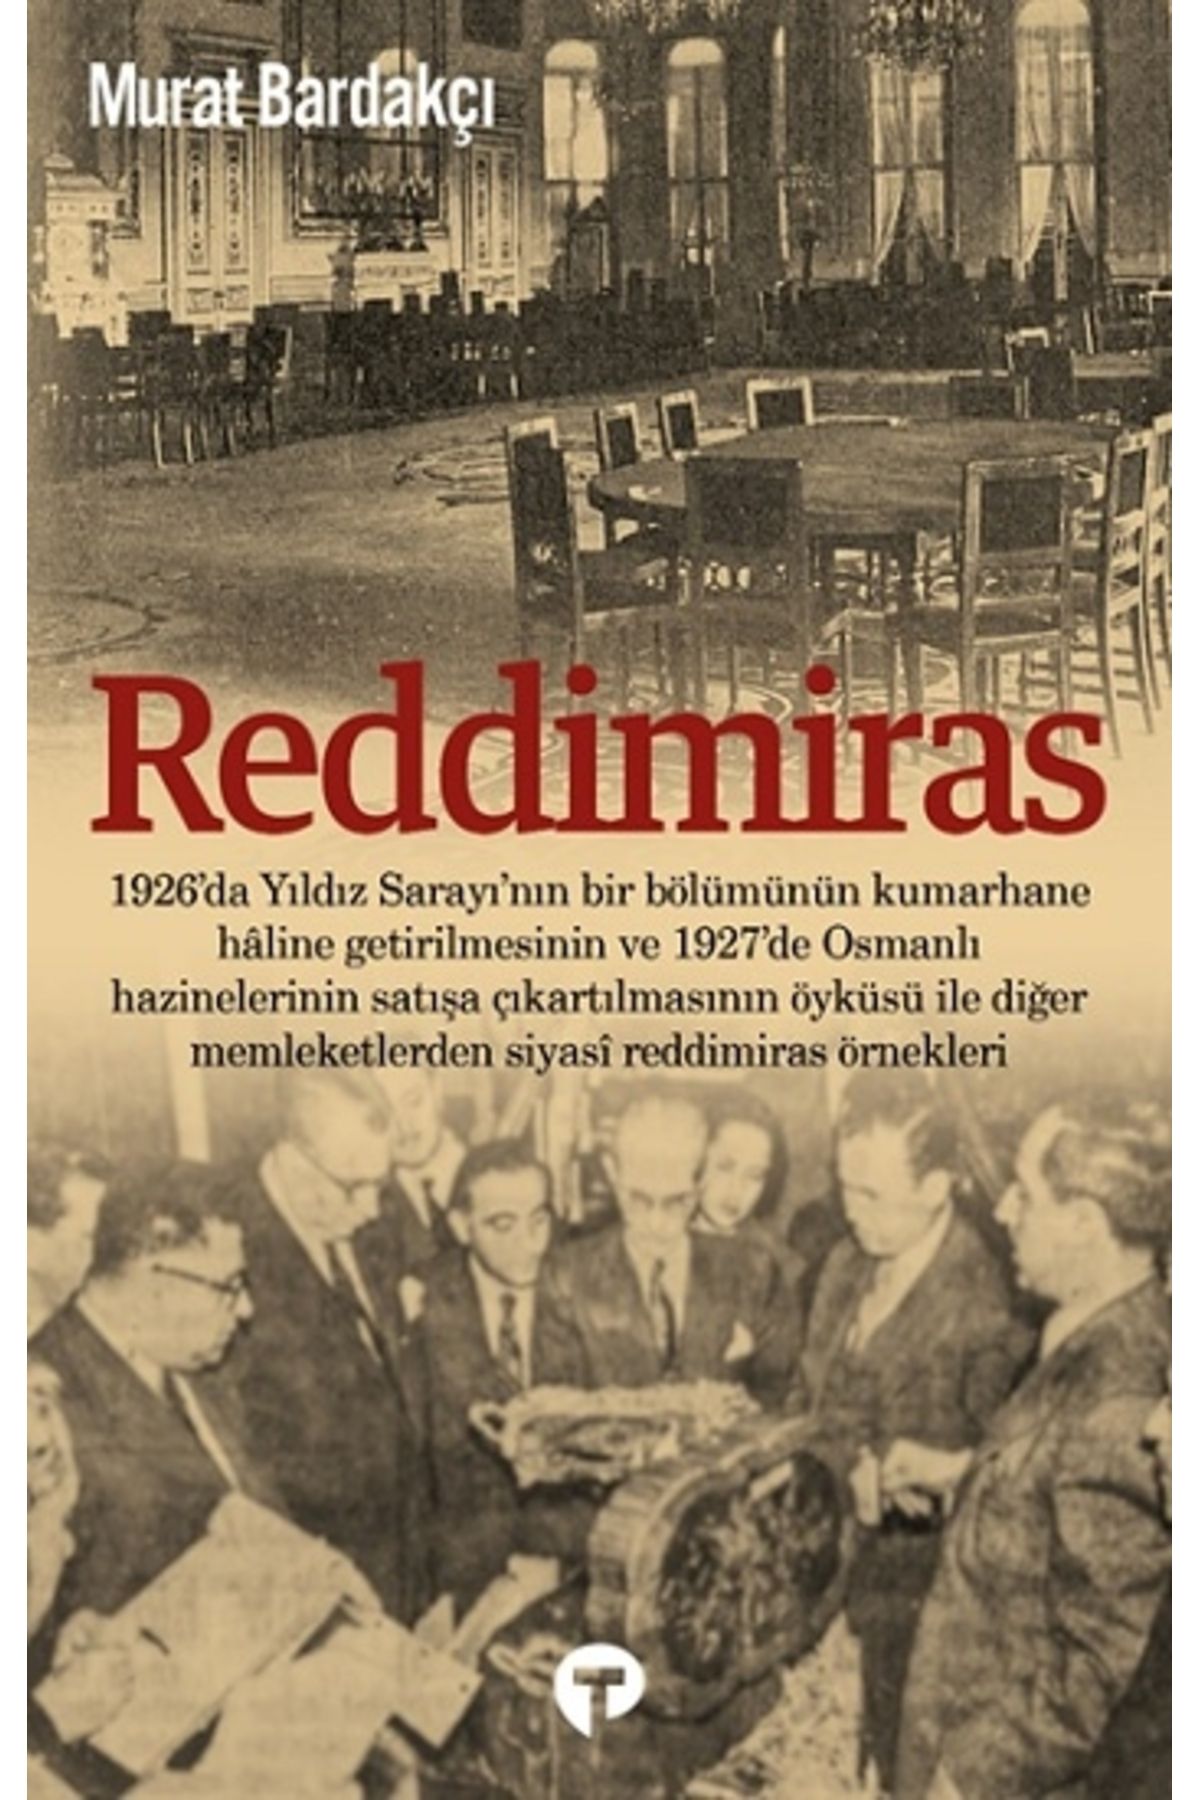 Genel Markalar Reddimiras kitabı - Murat Bardakçı - Turkuvaz Kitap